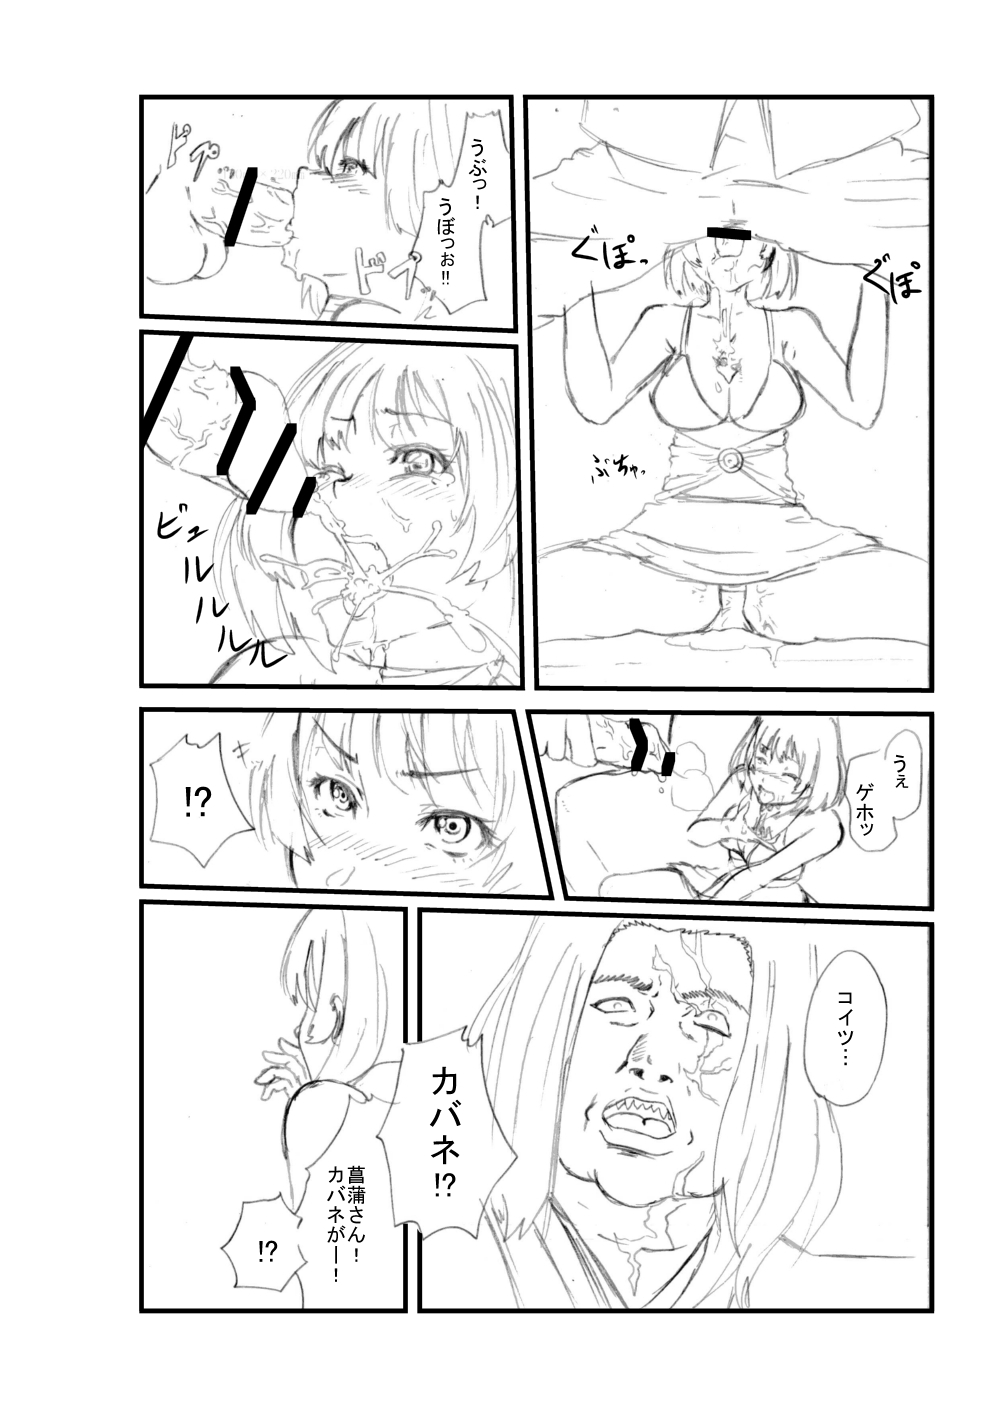 [Sezoku] Koutetsujou no Kabaneri (Koutetsujou no Kabaneri) page 6 full